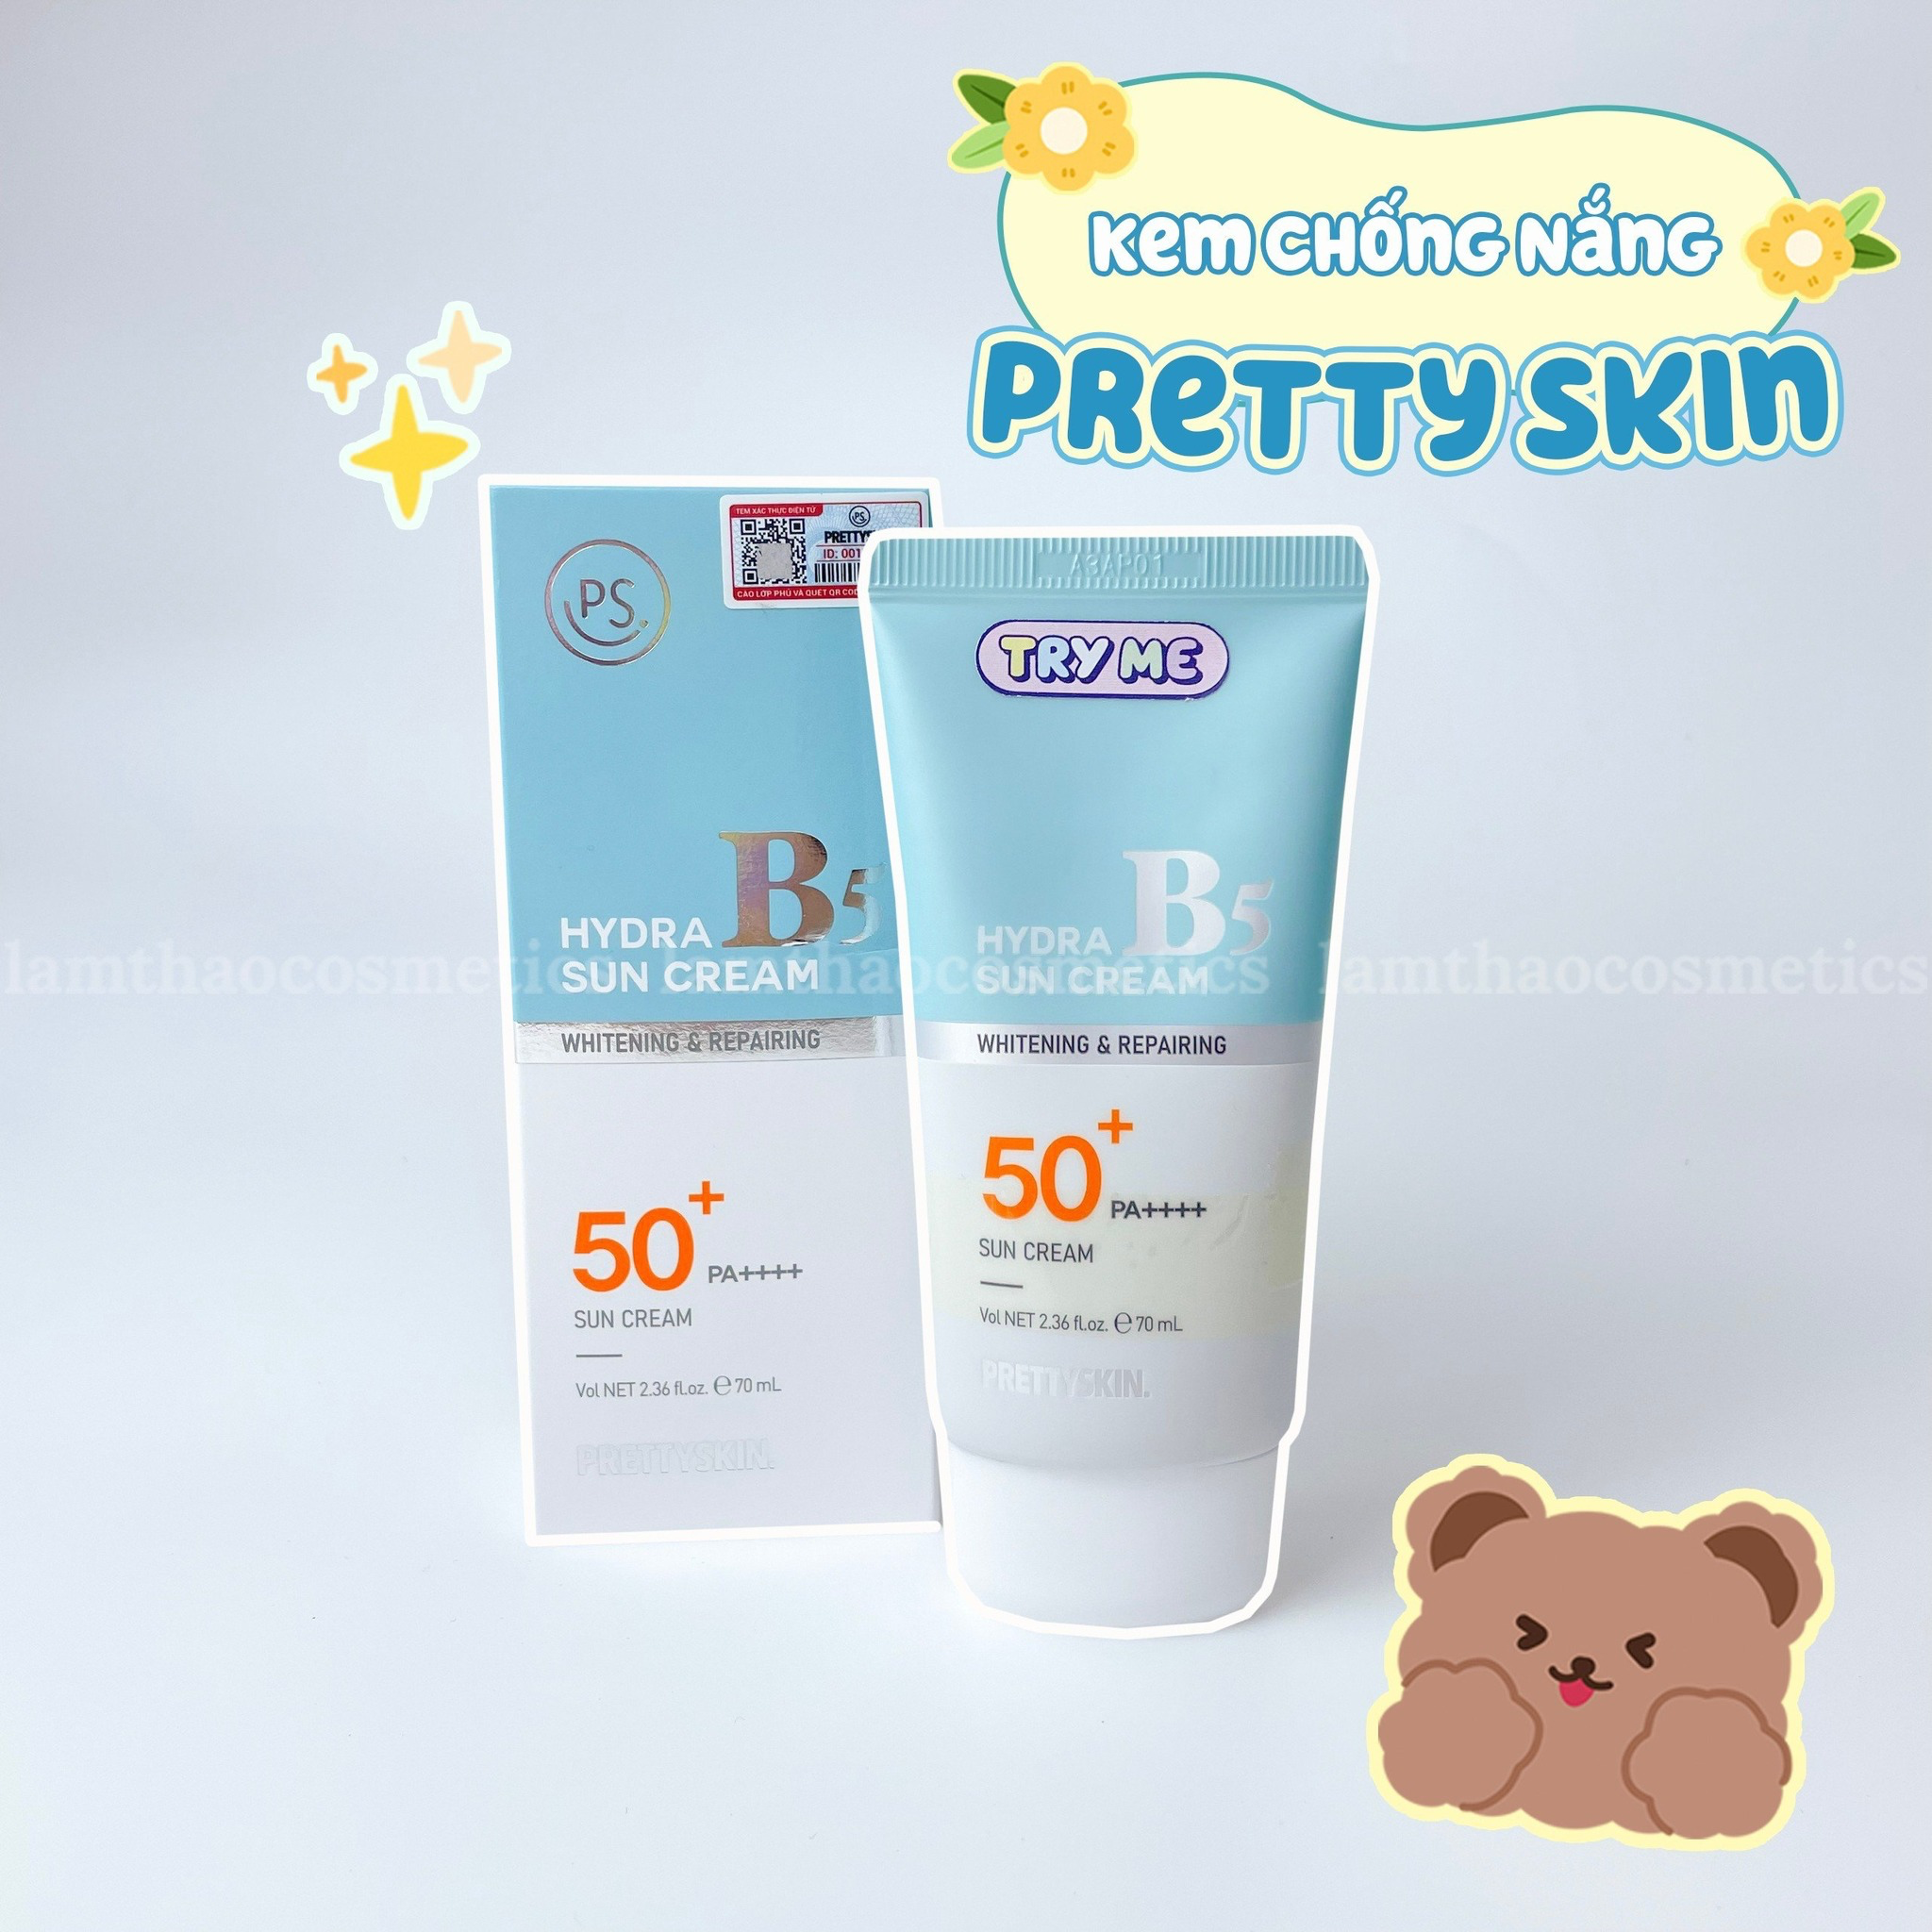 Kem Chống Nắng Pretty Skin Phục Hồi Dưỡng Trắng Hydra B5 Sun Cream SPF 50+/PA+++